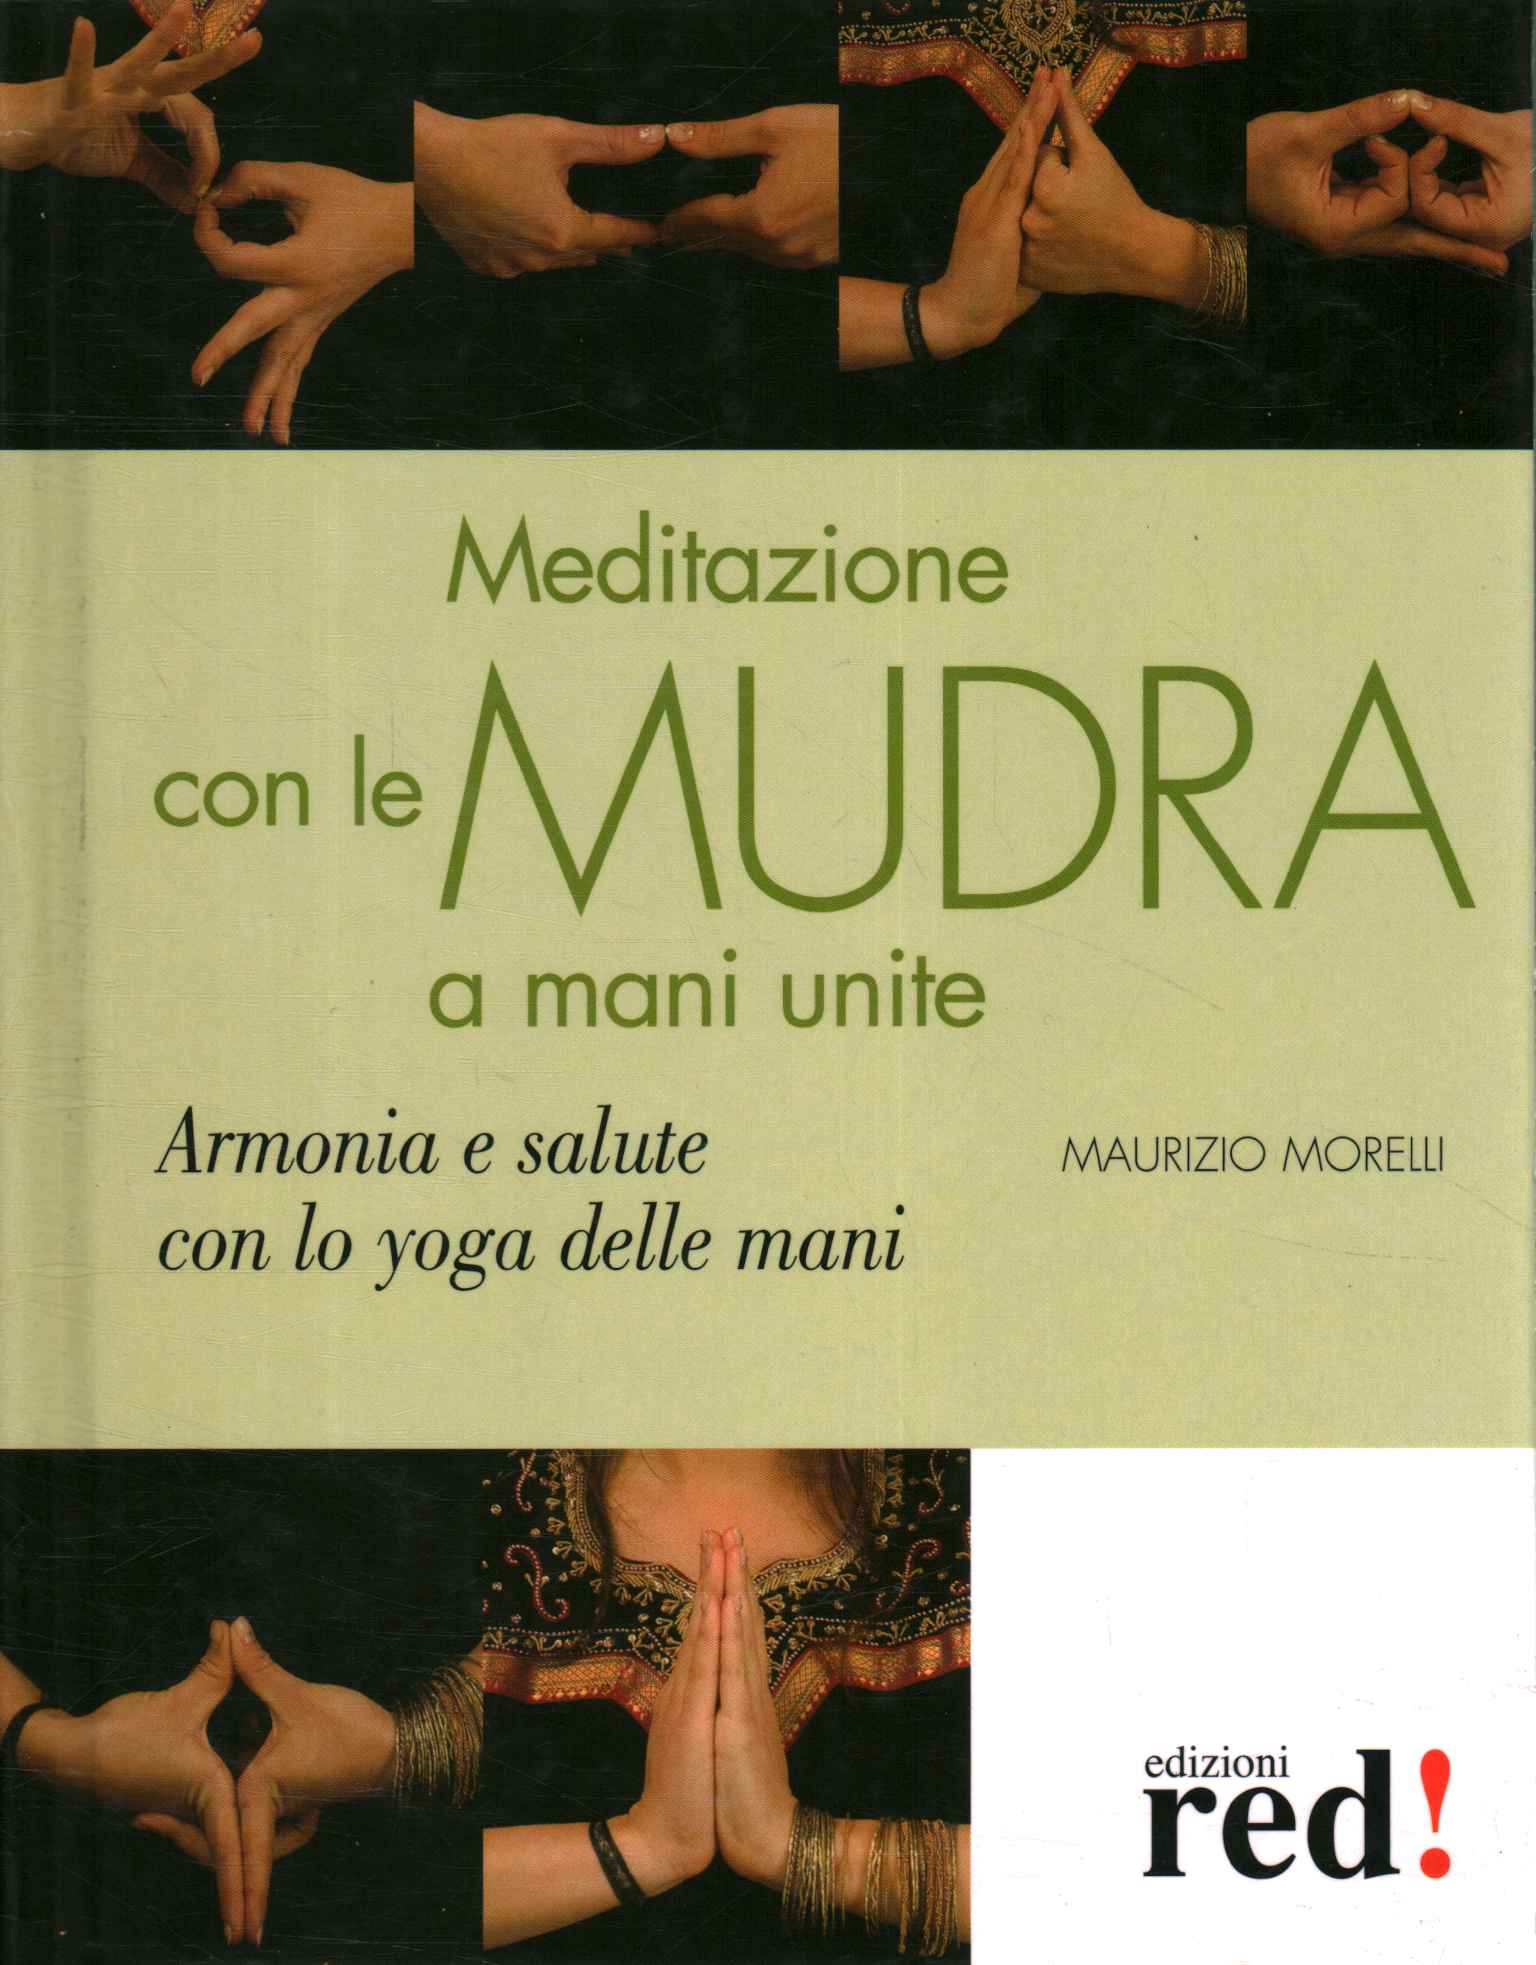 Meditation mit verbundenen Händen Mudras